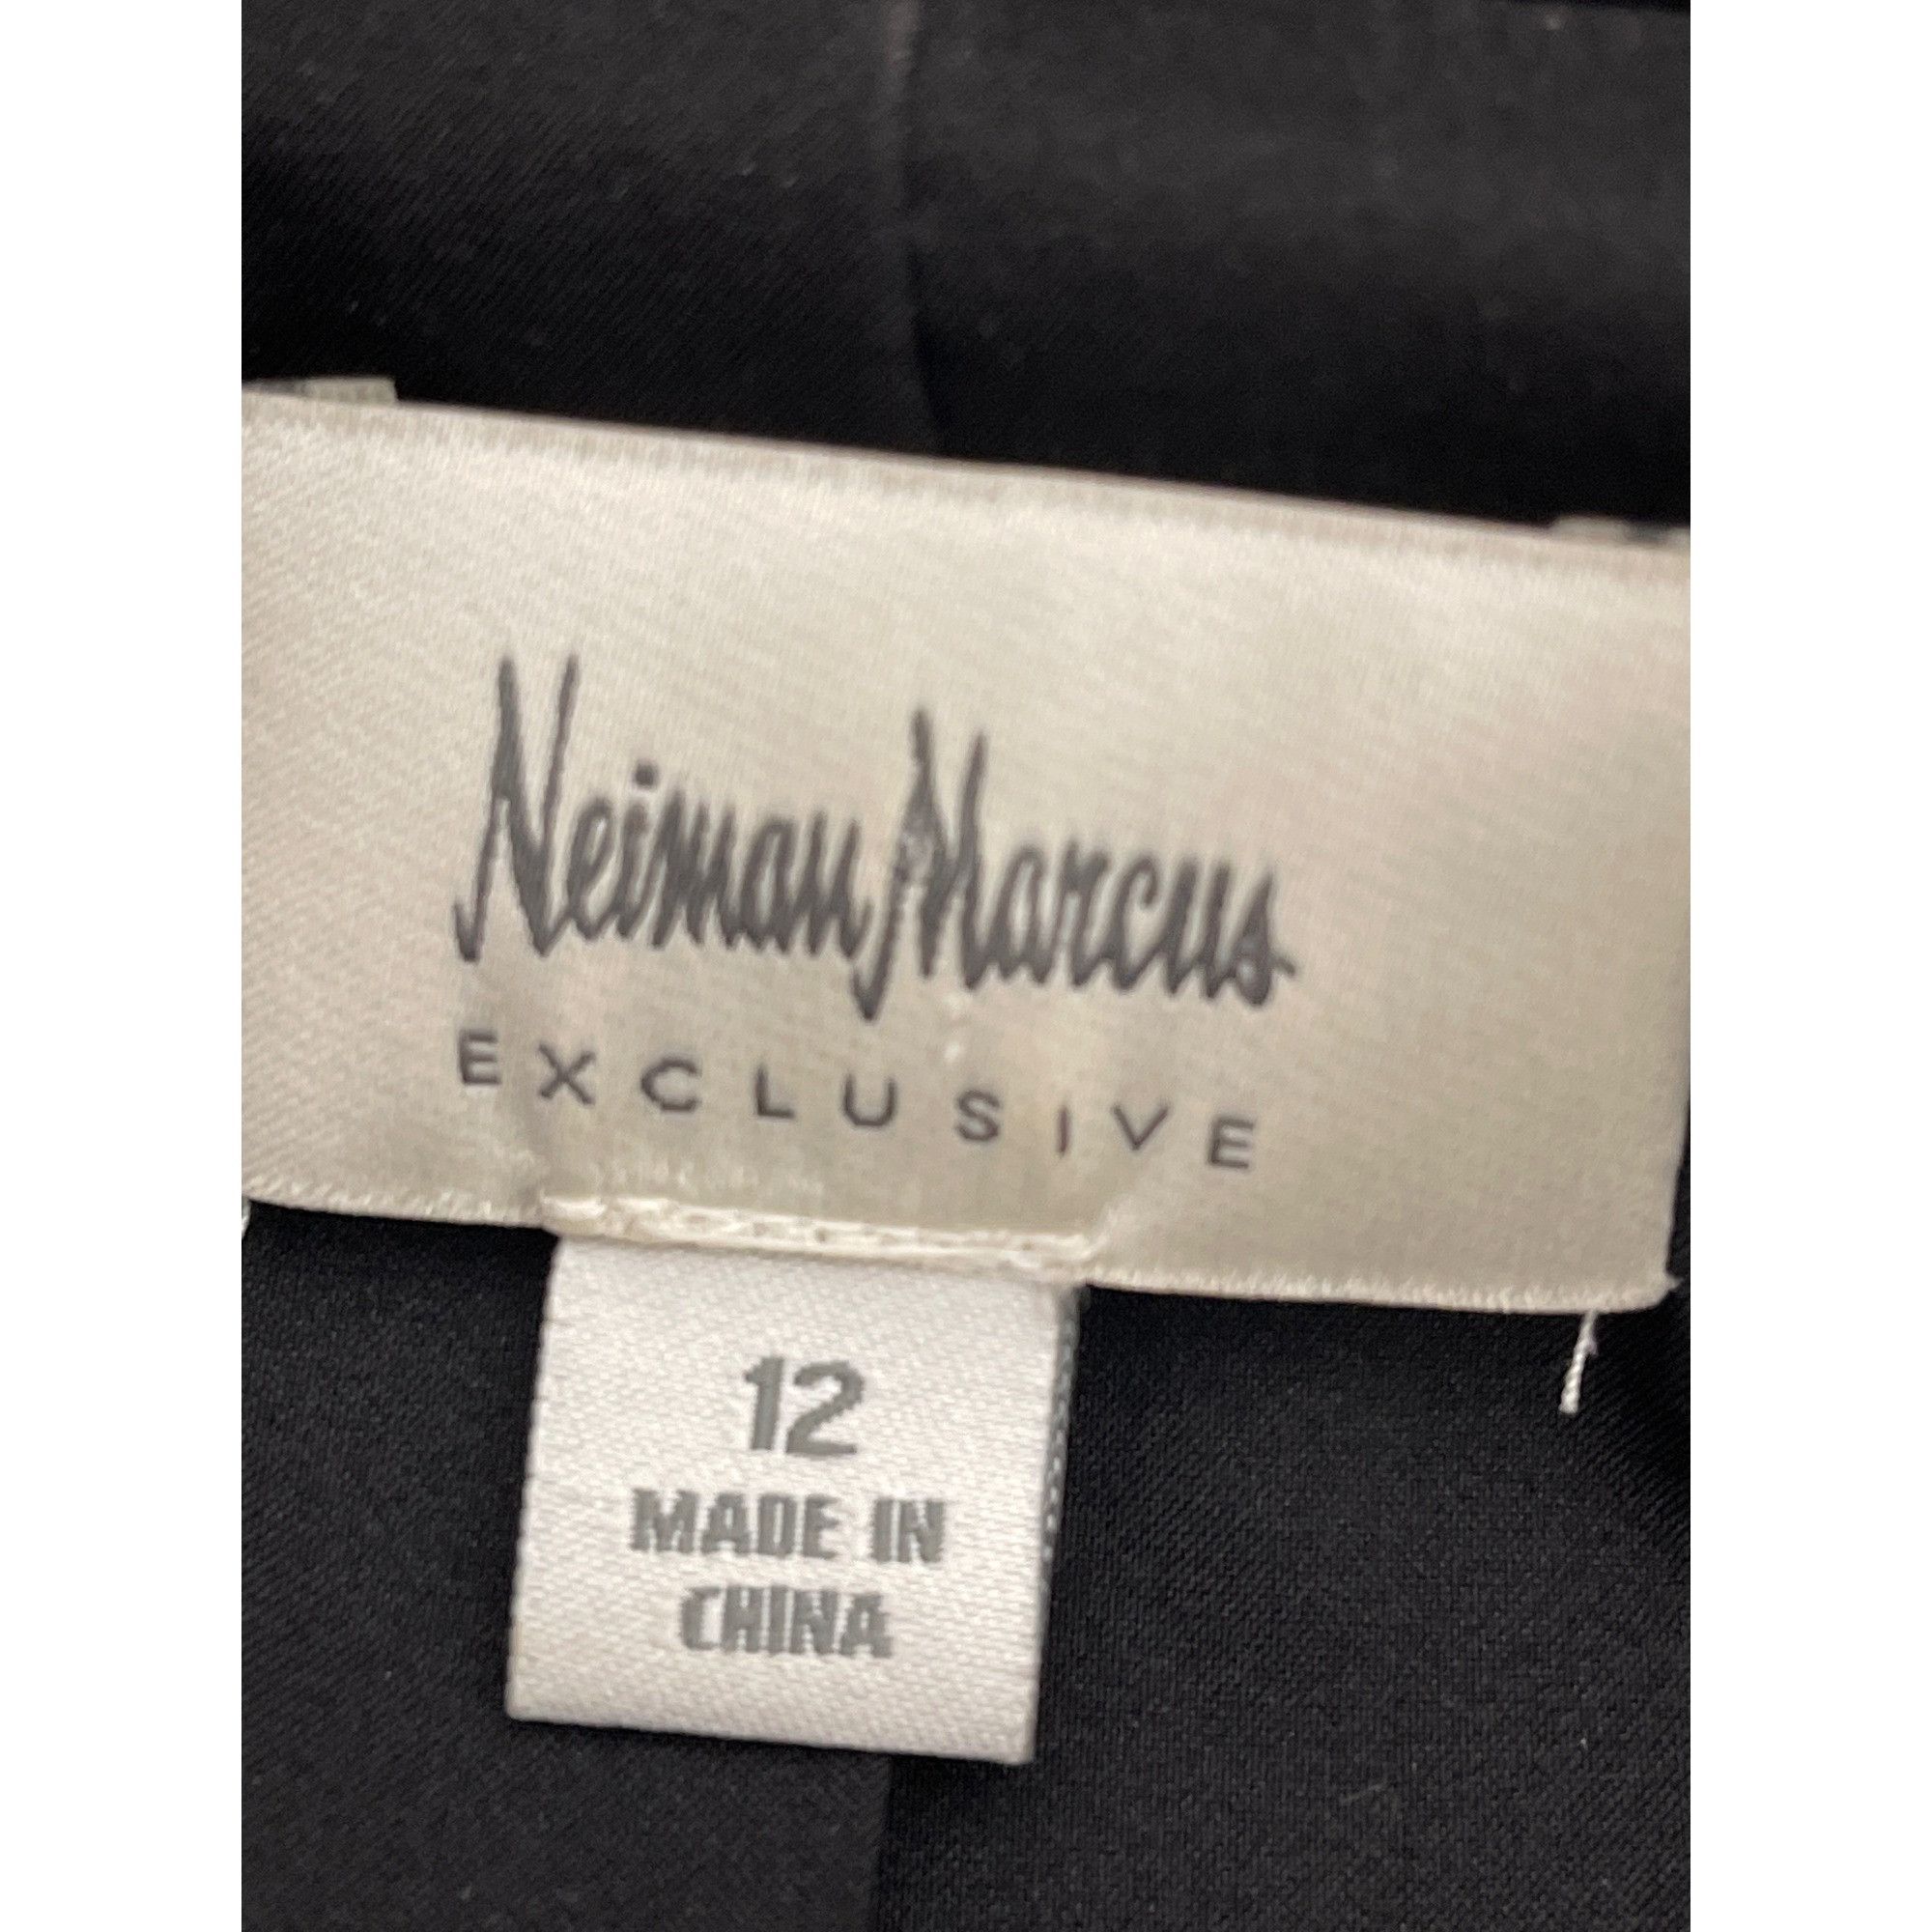 Neiman Marcus Black Blazer Dress Size 12